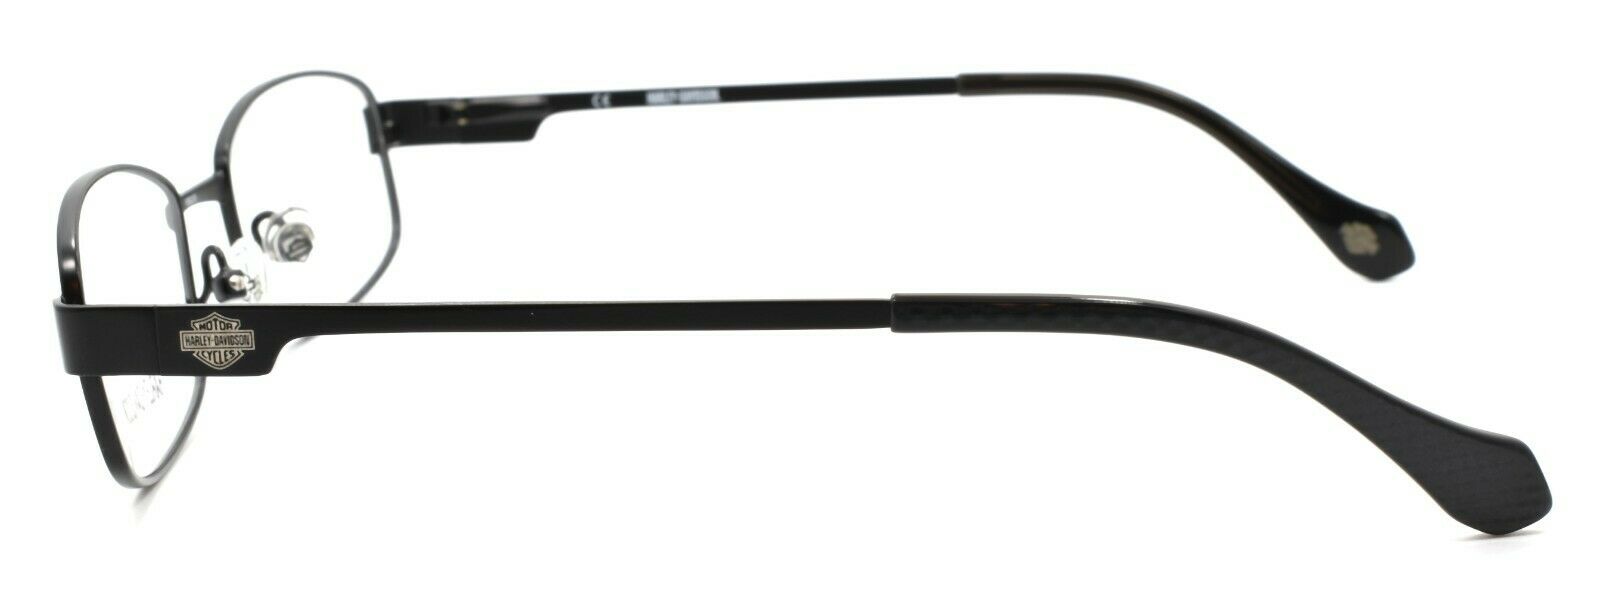 3-Harley Davidson HDT115 BLK Eyeglasses Frames SMALL 49-19-130 Black + CASE-715583246362-IKSpecs